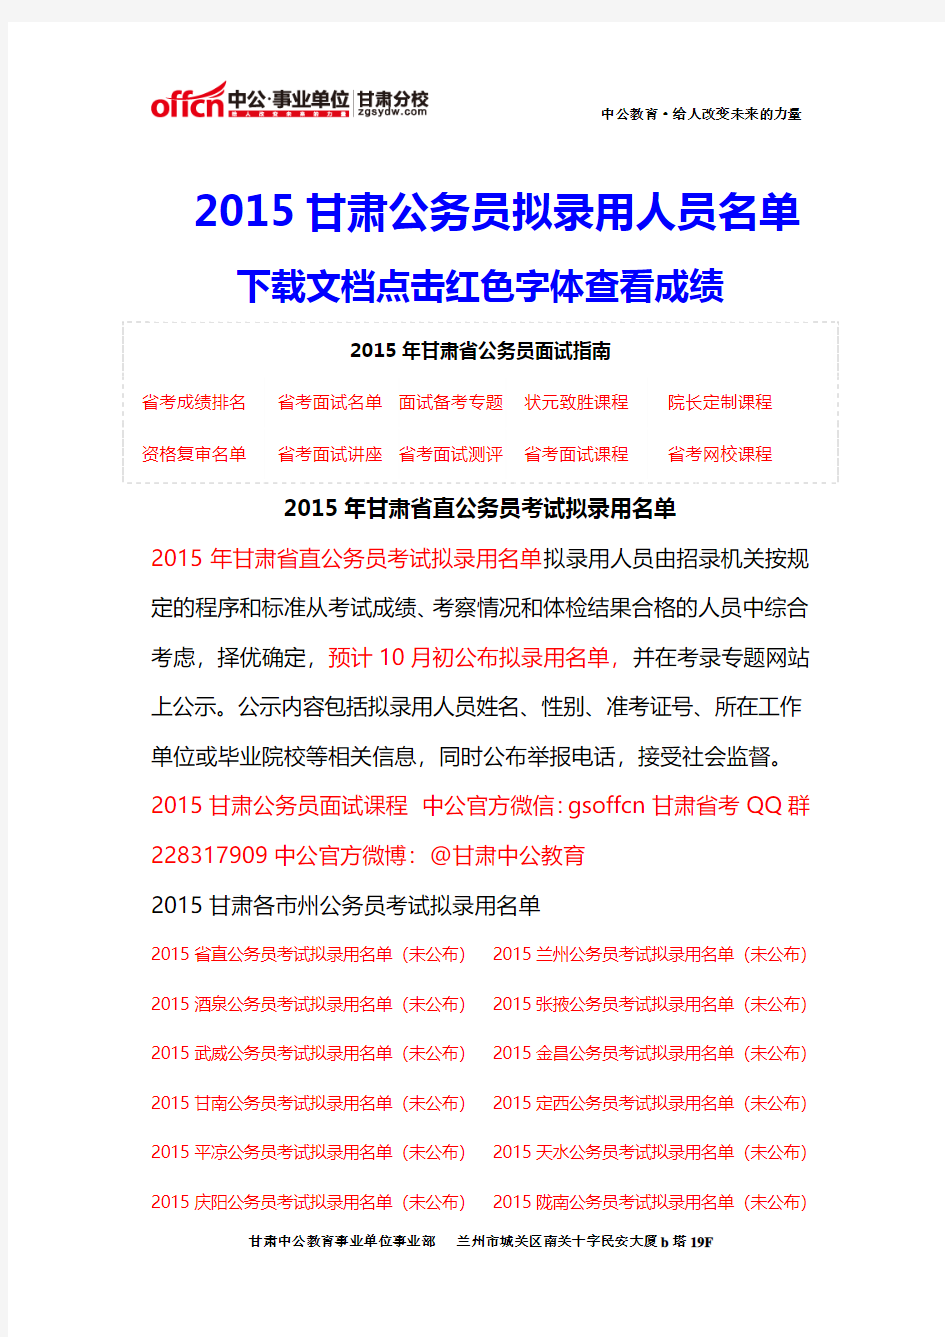 2015年甘肃公务员考试拟录用名单 (20)